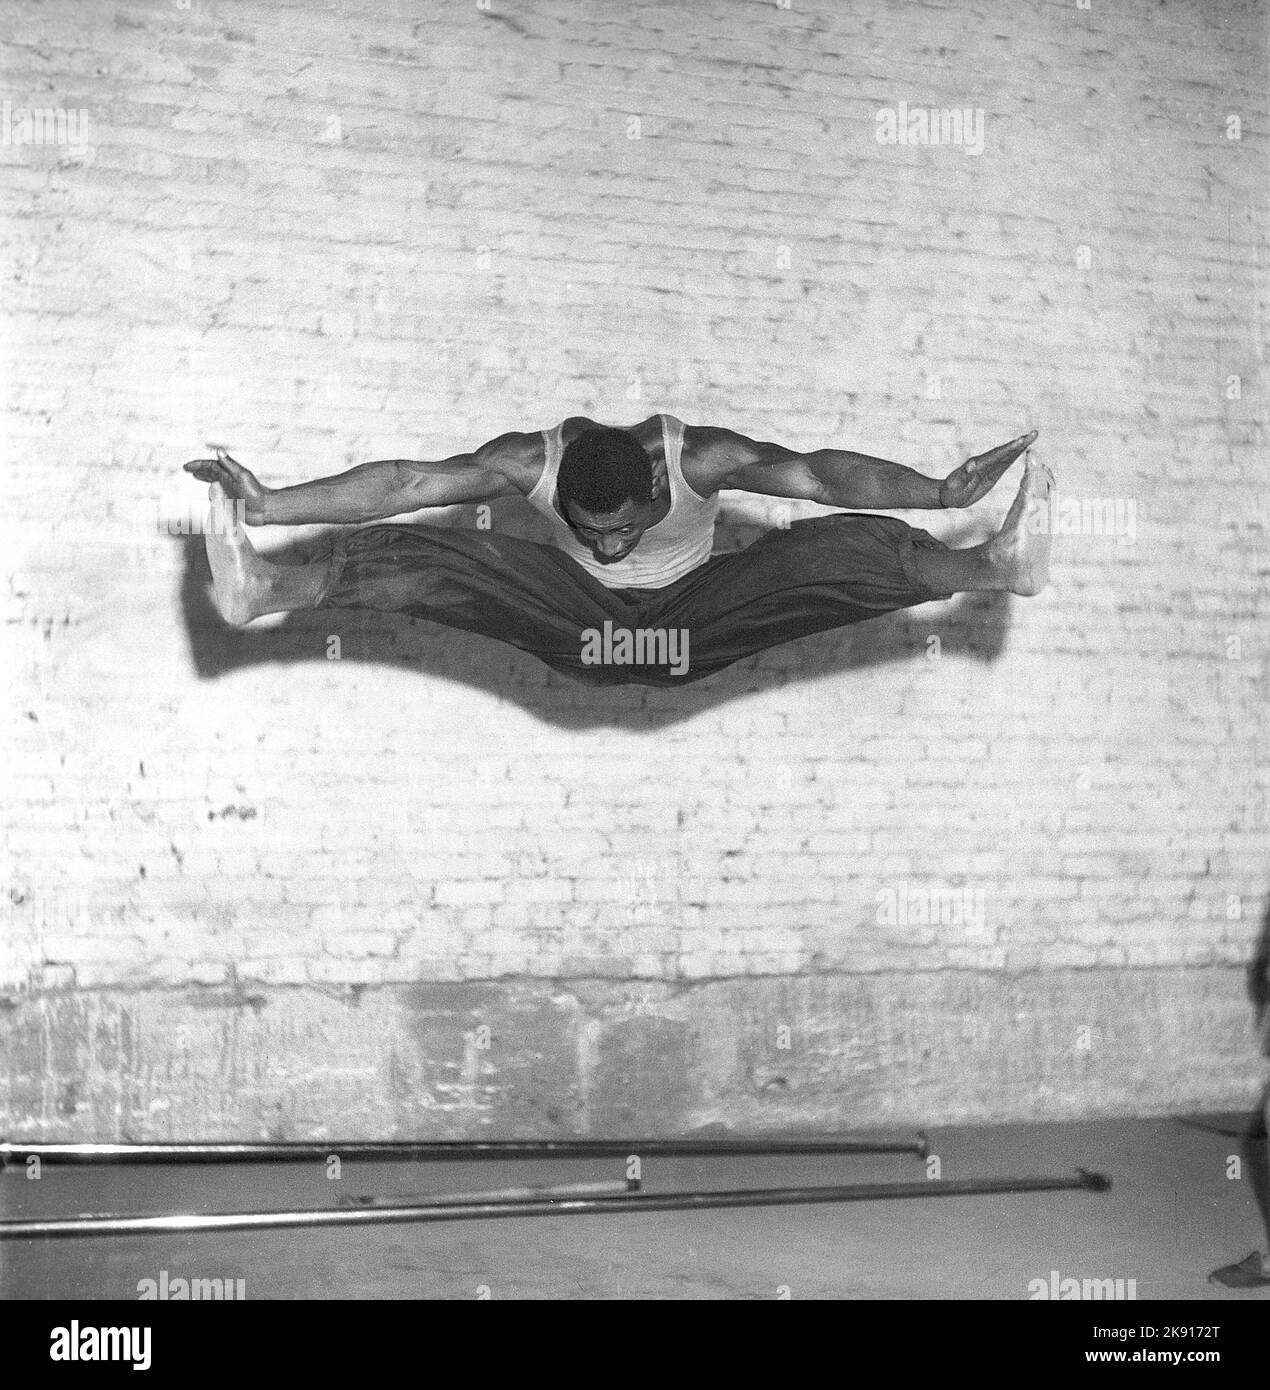 Tanzen in der 1940s. Performance-Tänzer auf der Tanzfläche bei einer Show, bei der Tanz und Schauspiel kombiniert werden. Zu dieser Zeit im Jahr 1940s war der Tanz Jitterbug populär. Ein Mann wird in dem Moment, in dem er hoch in der Luft ist, in einem akrobatischen Sprung dargestellt, der seine Beine und Arme ausbreitet. Schweden 1947. Kristoffersson Ref. Z42-2 Stockfoto